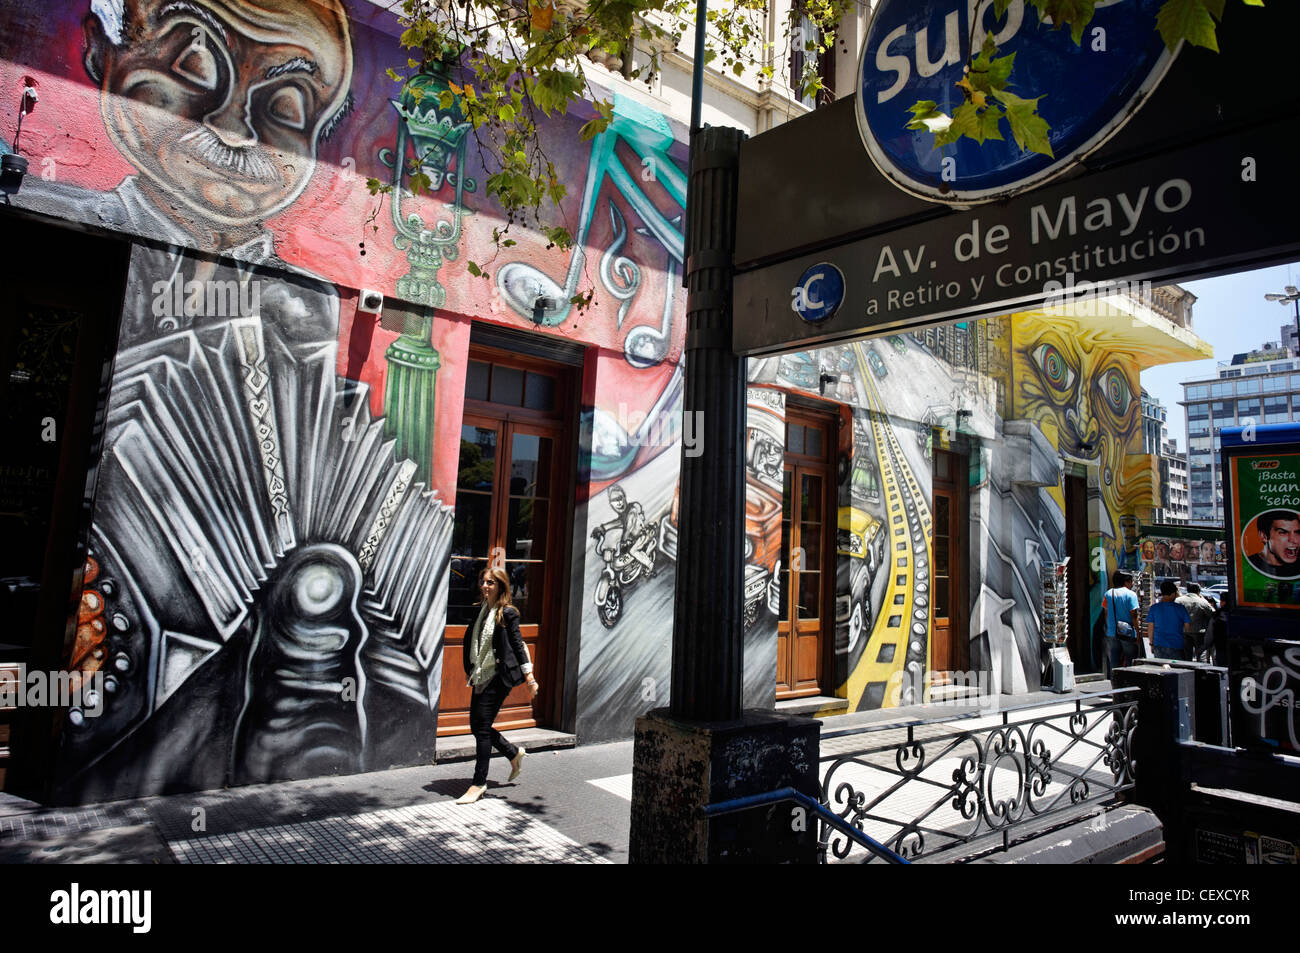 La Avenida de Mayo, Graffiti, Estación de Metro, Buenos Aires, Argentina Foto de stock